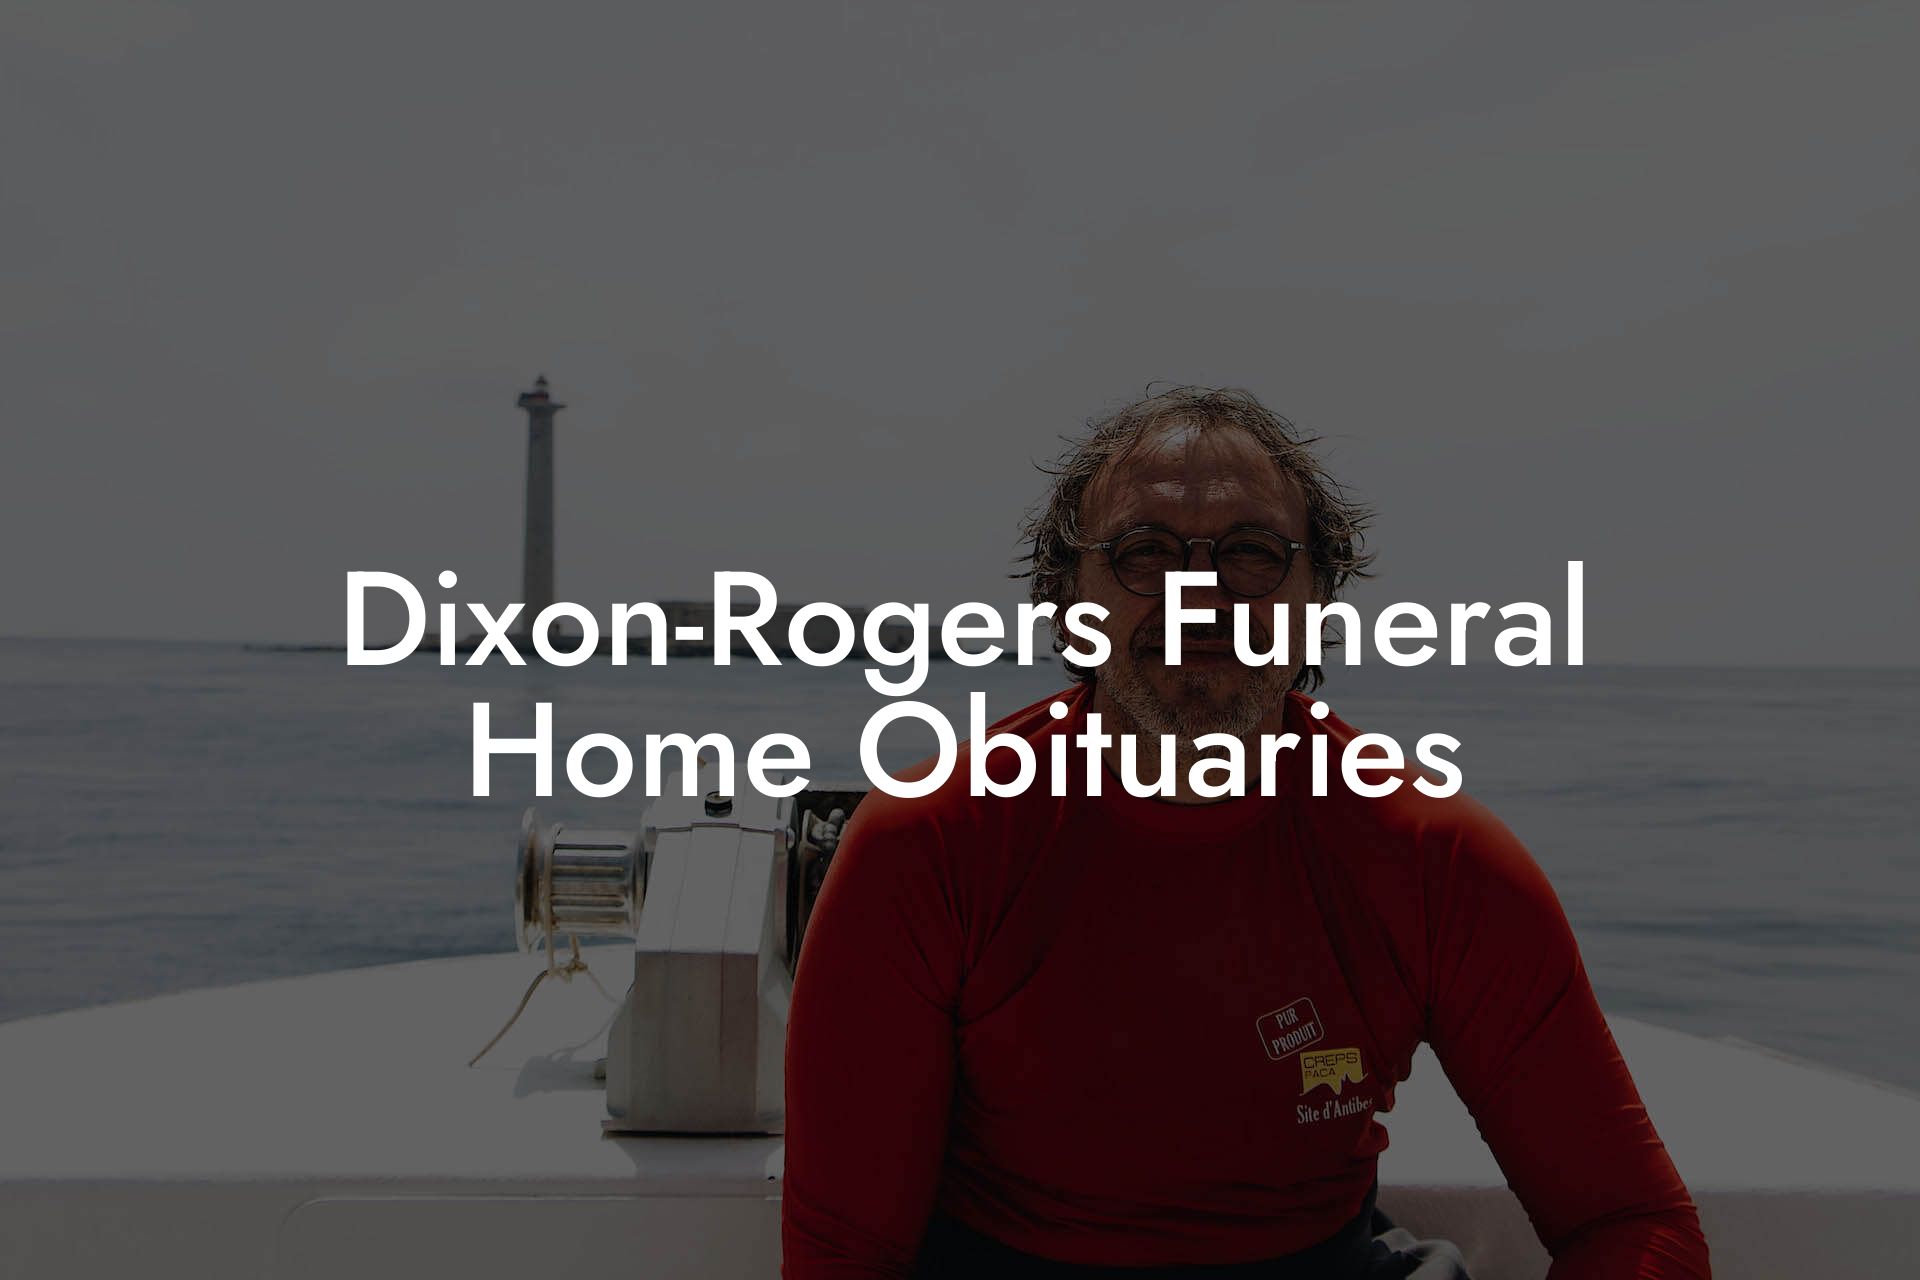 Dixon-Rogers Funeral Home Obituaries